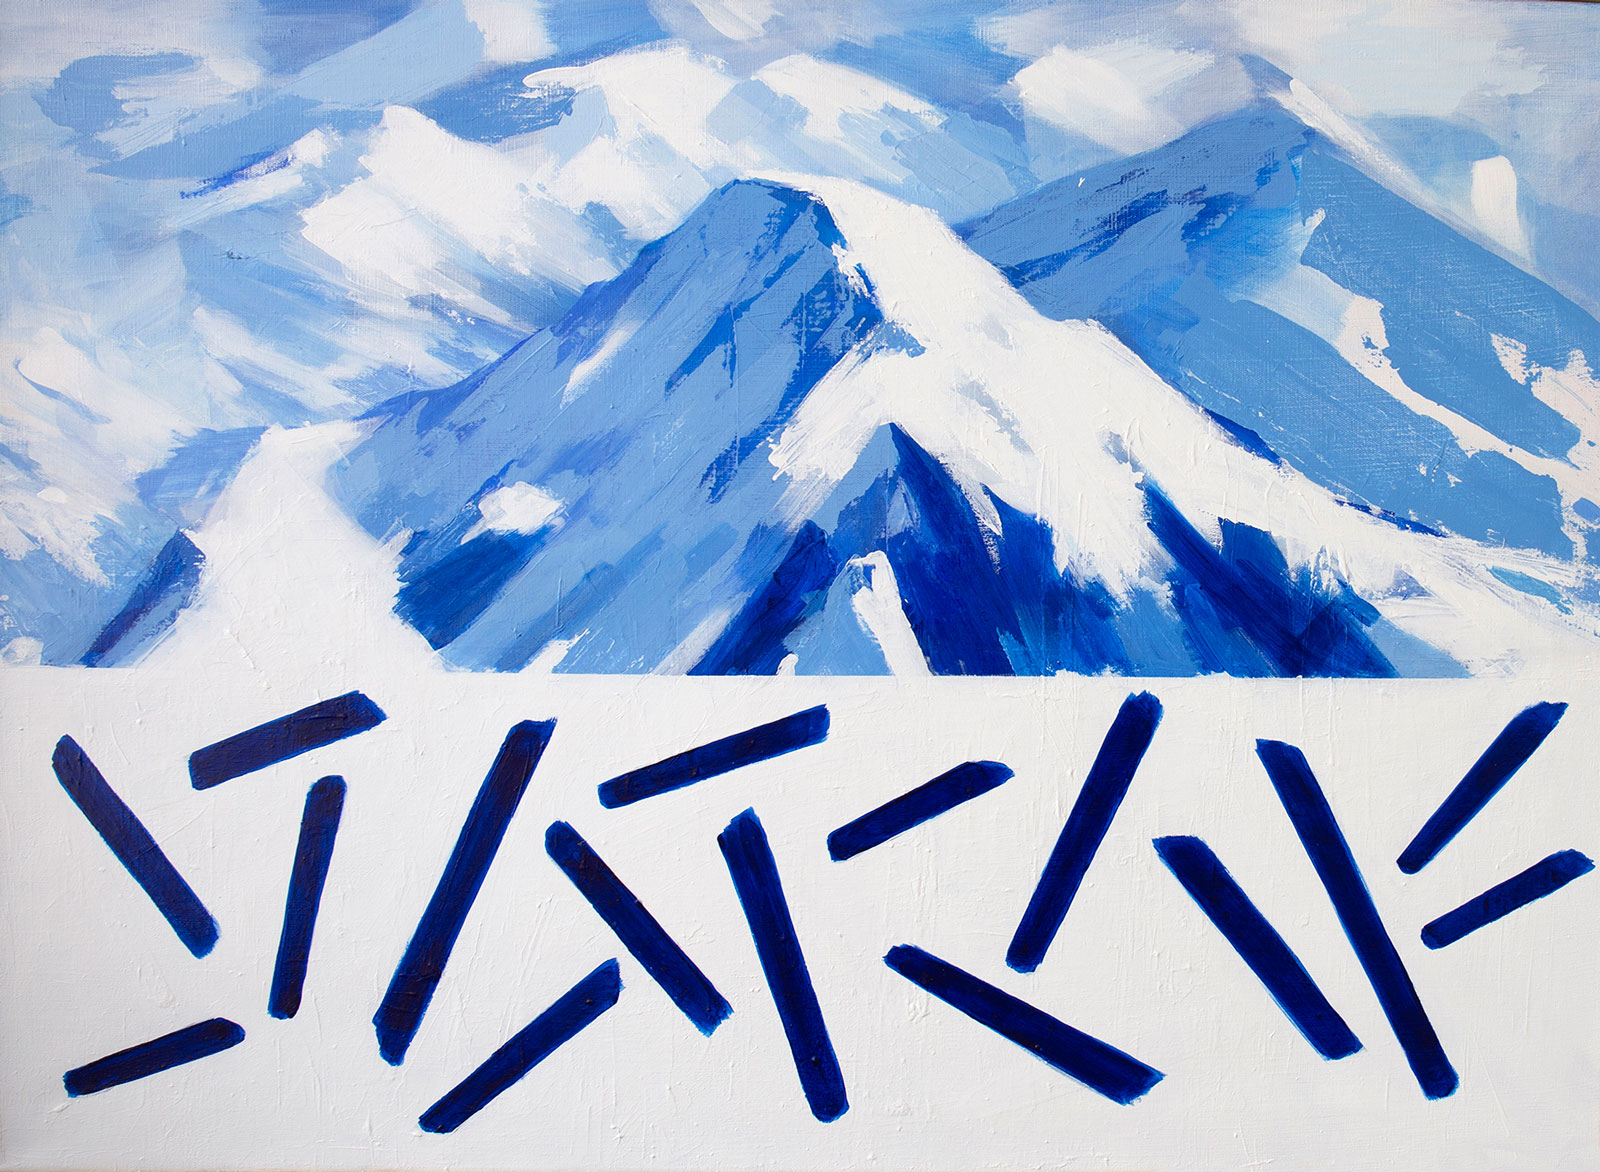 Målning. På övre halvan av bilden, snöiga berg i blå och vit färgskala sedda snett uppifrån. På den undre, blå streck i olika riktningar mot en vit bakgrund. 